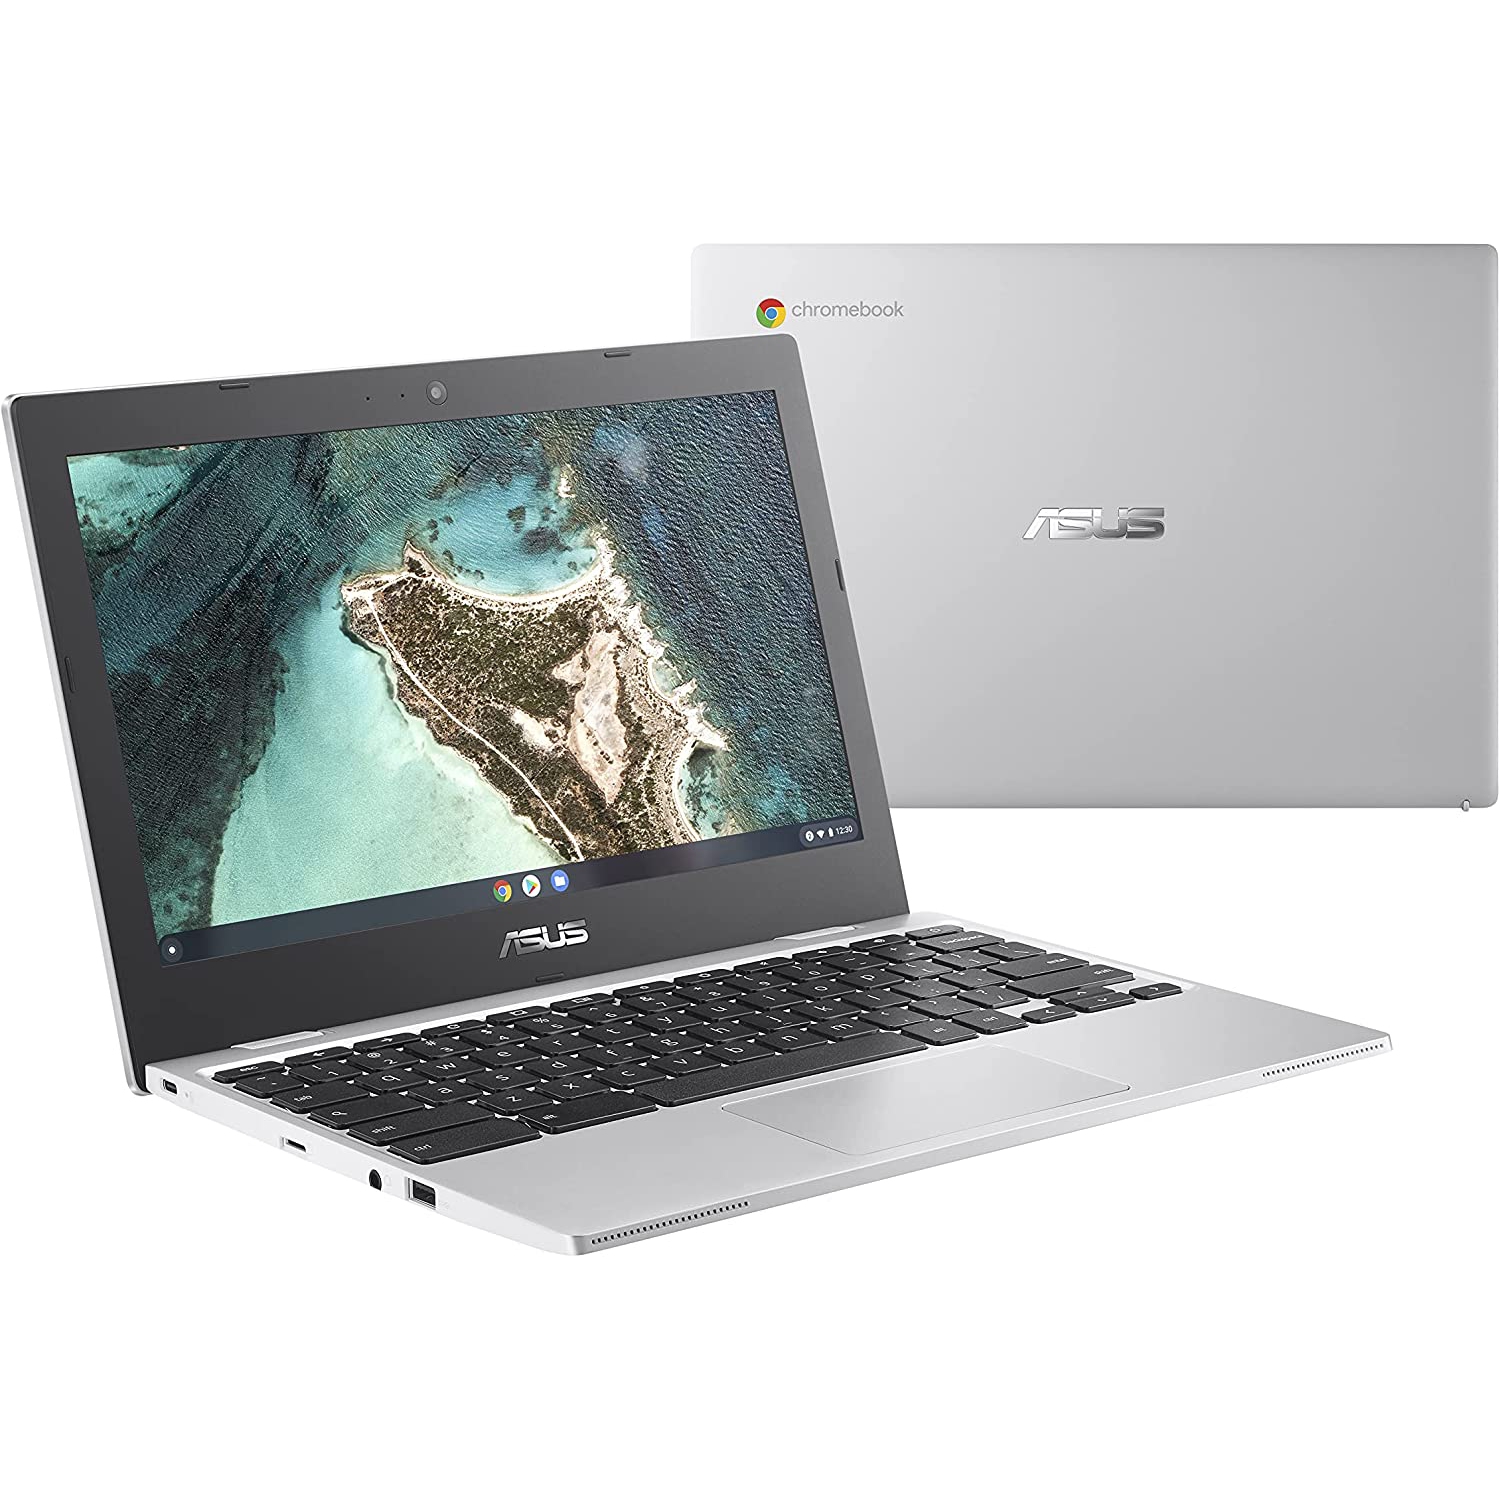 ASUS 11.6" HD Chromebook Intel Celeron N3350 1.1 GHz 4GB 32GB Chrome OS Silver